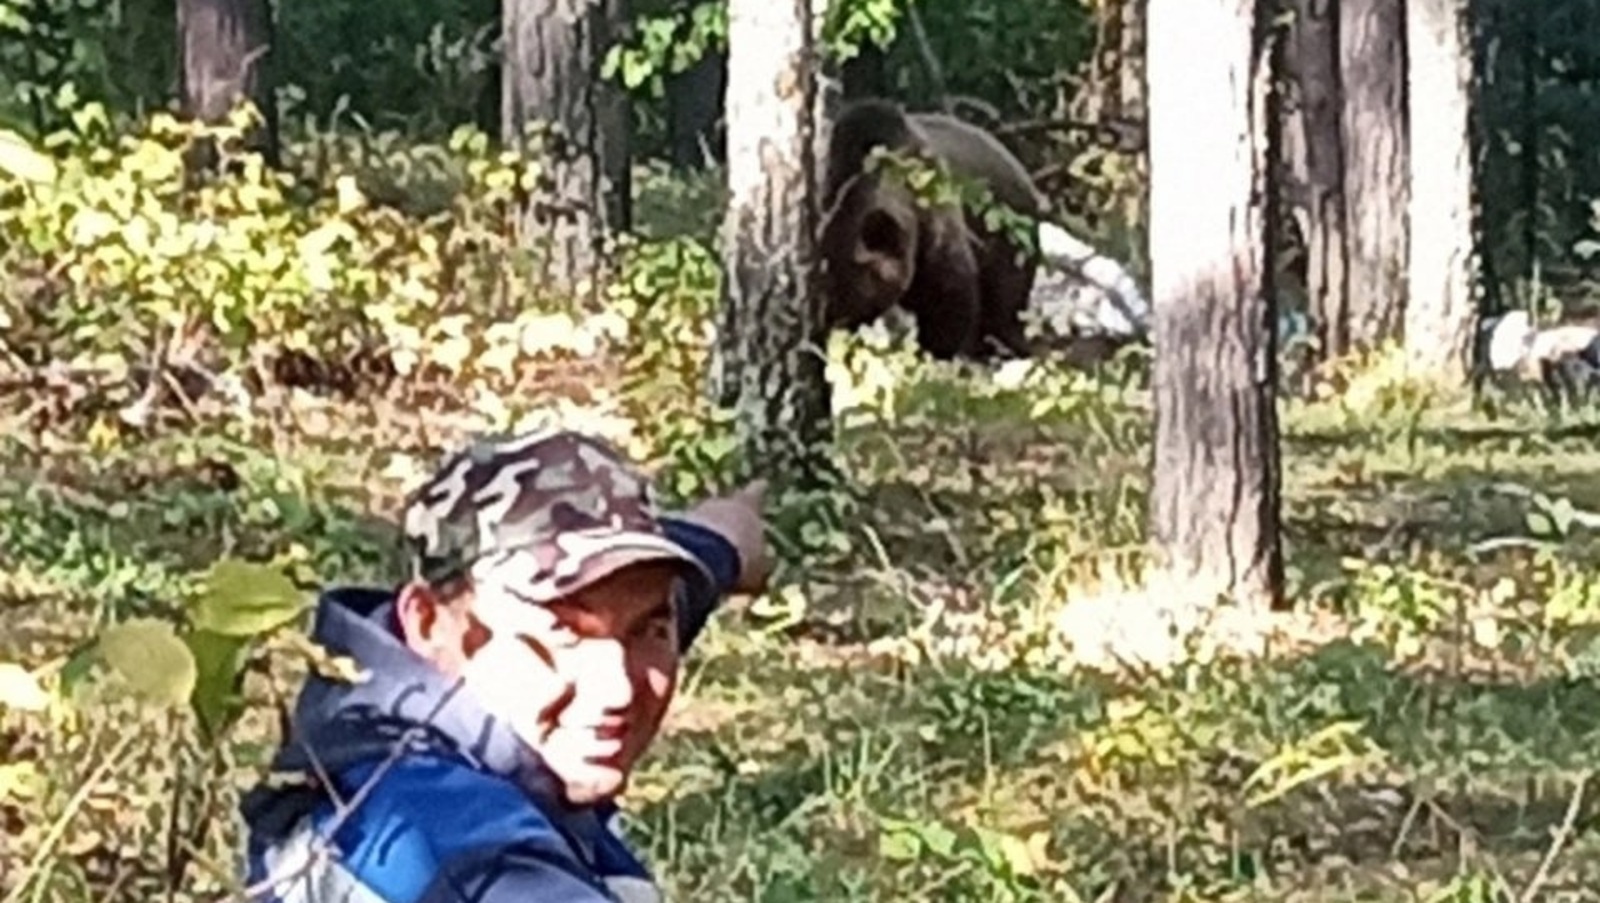 Житель Башкирии сфотографировался с медведем в лесу